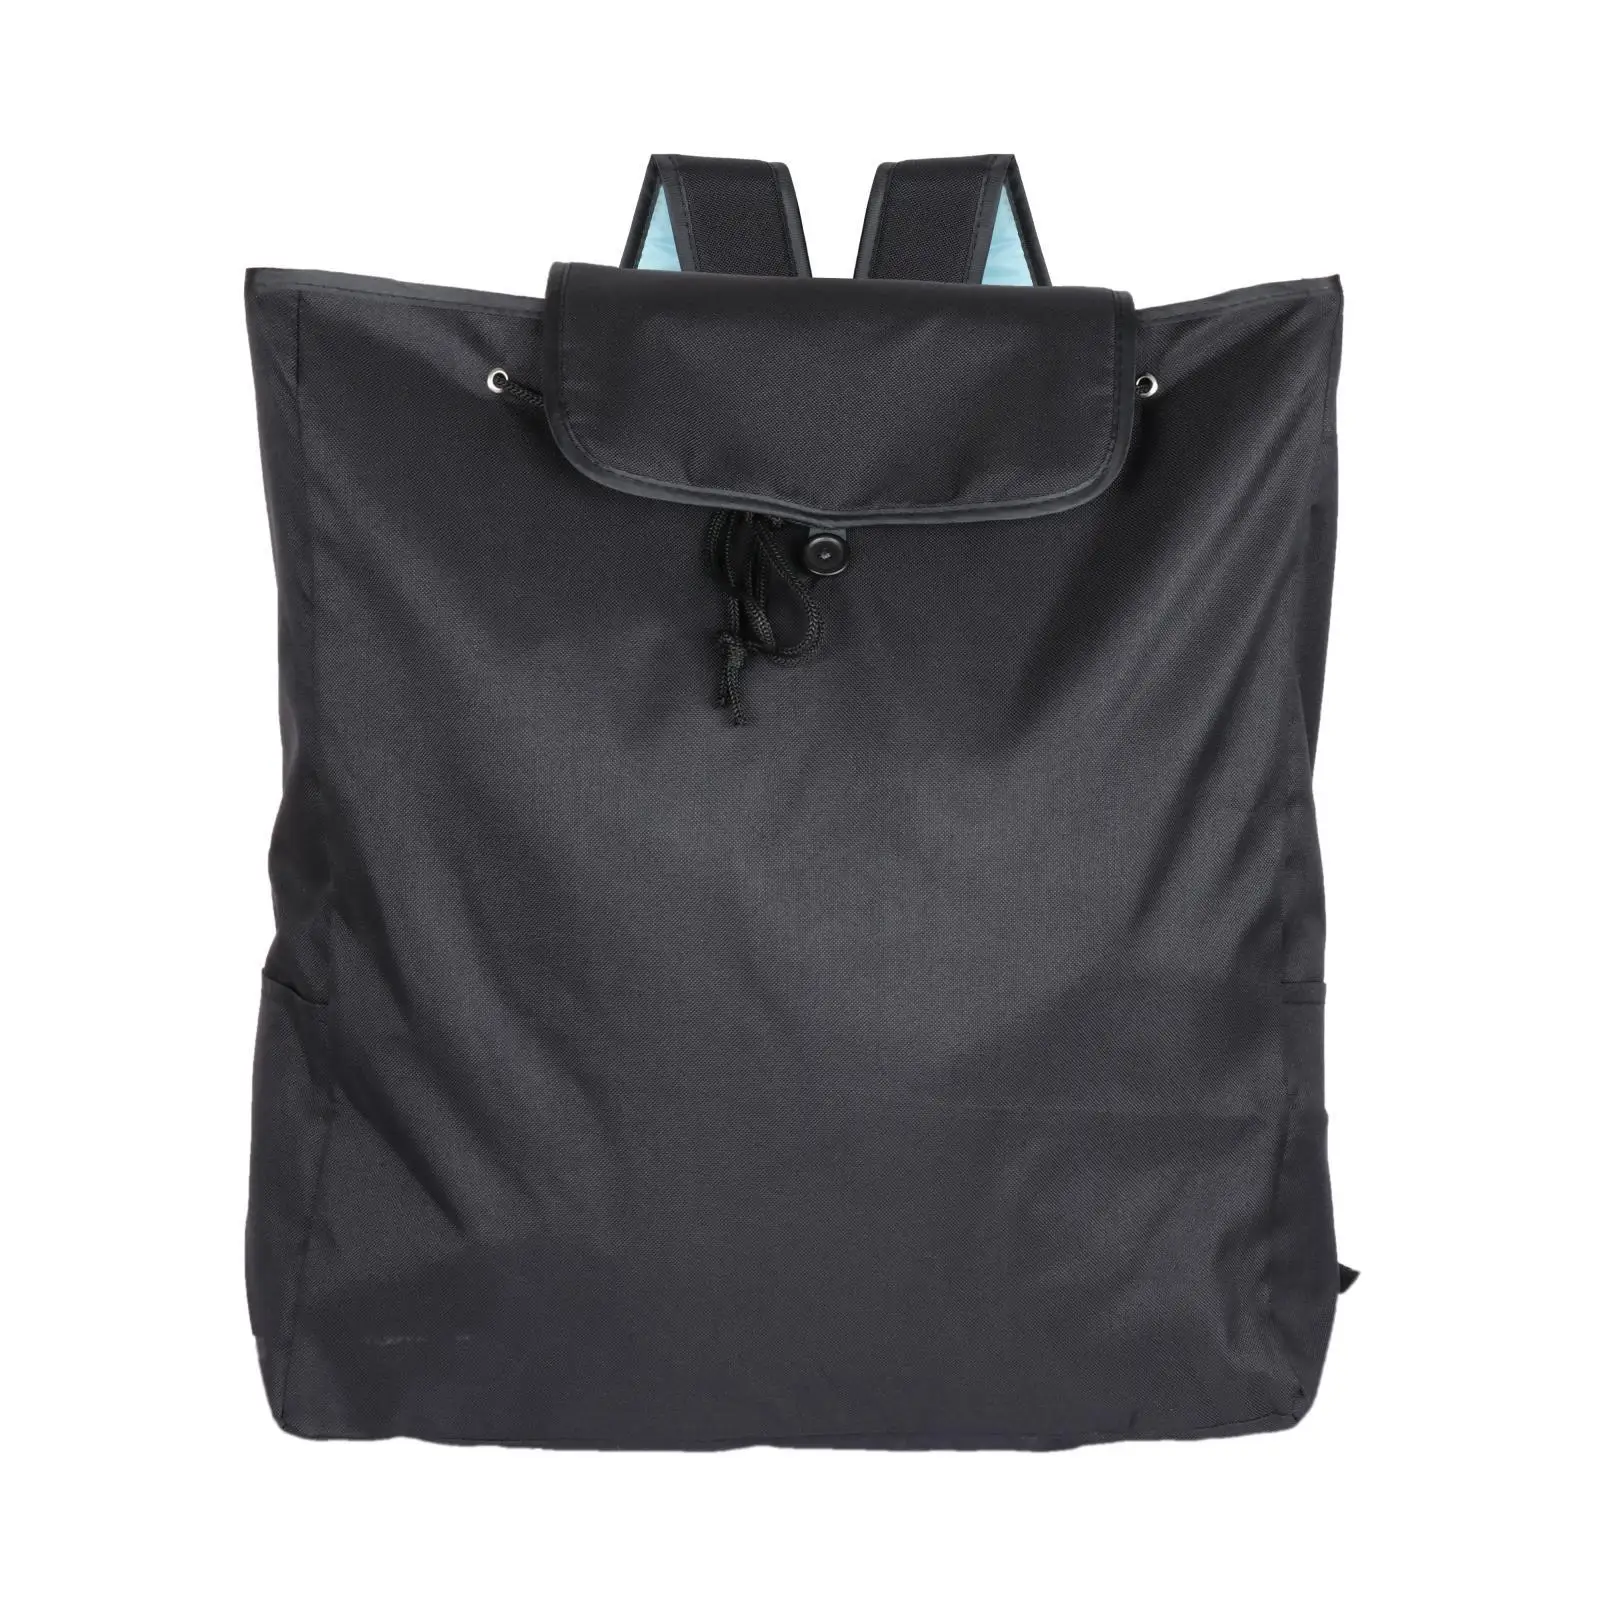 Stroller Backpack Dustproof Lightweight Adjustable Shoulder Strap Pram Organiser Bag for Airplane Travel